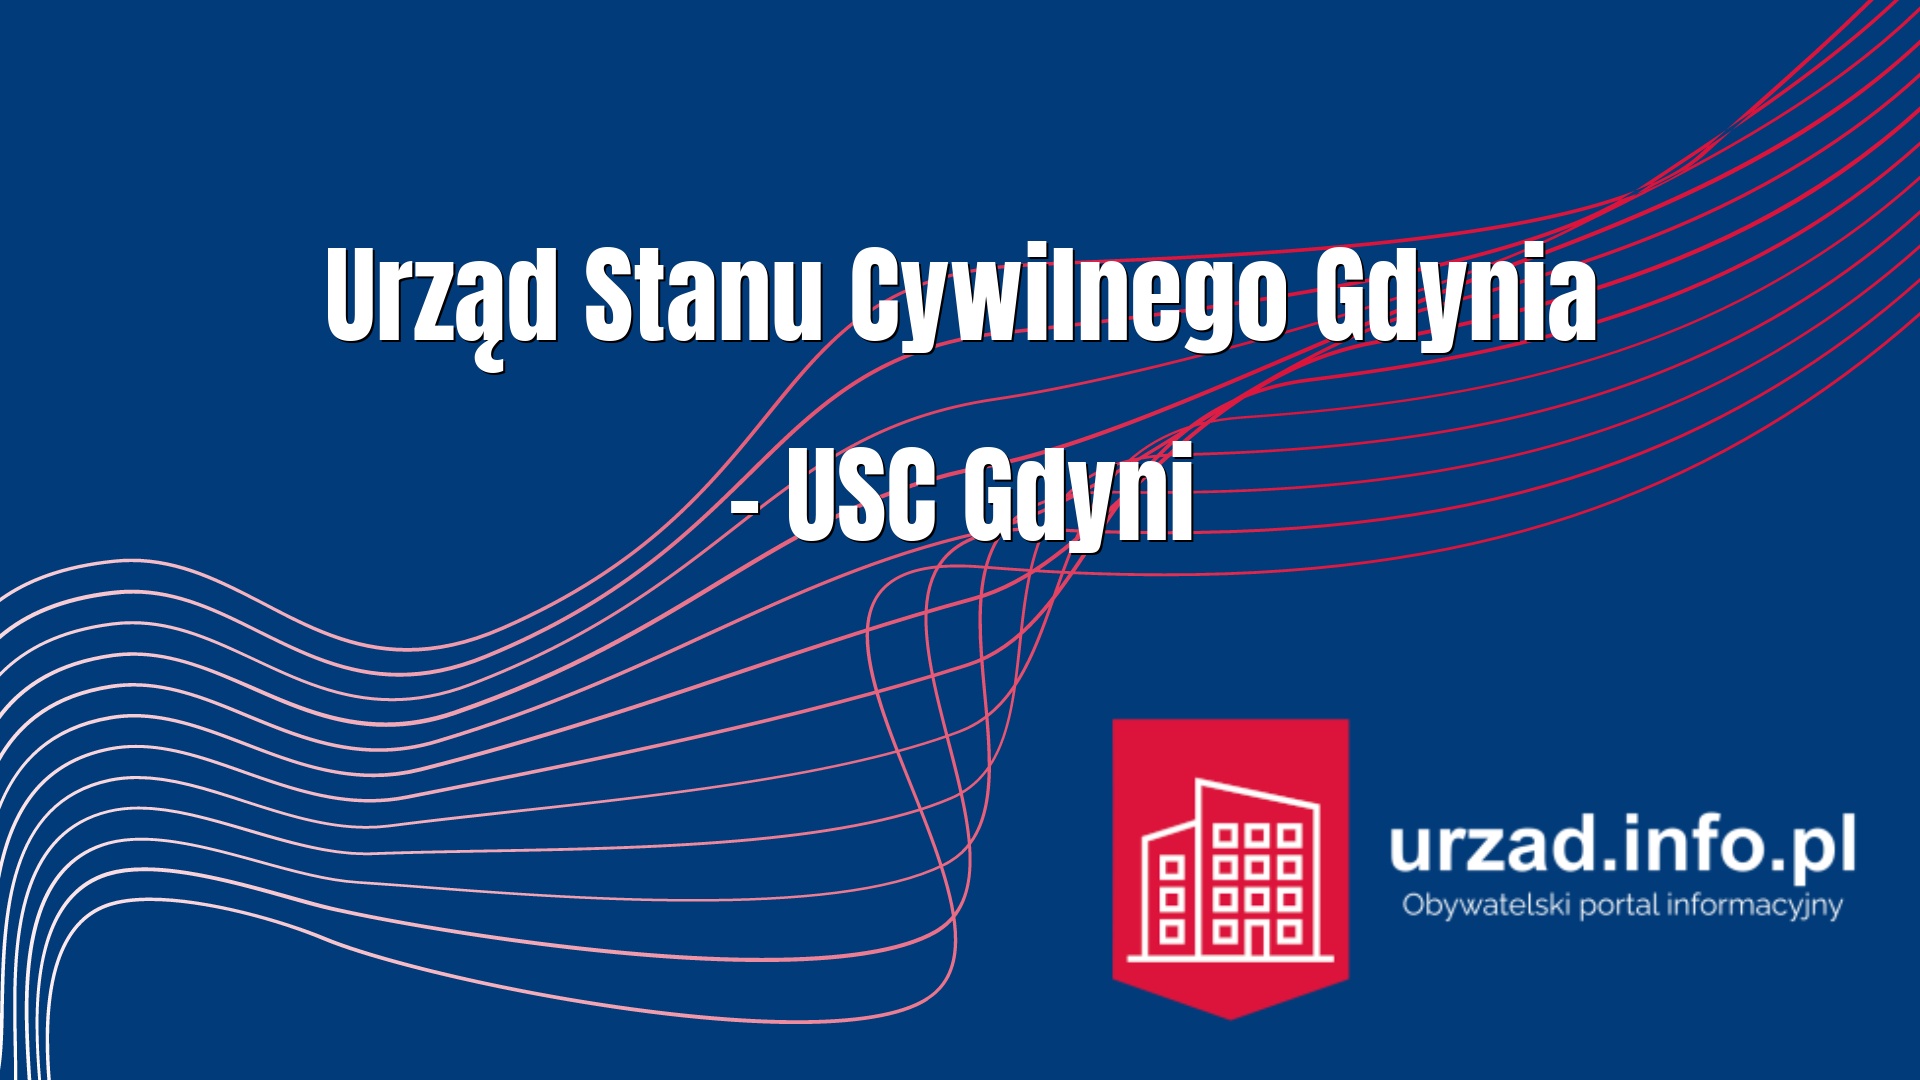 Urząd Stanu Cywilnego Gdynia – USC Gdyni